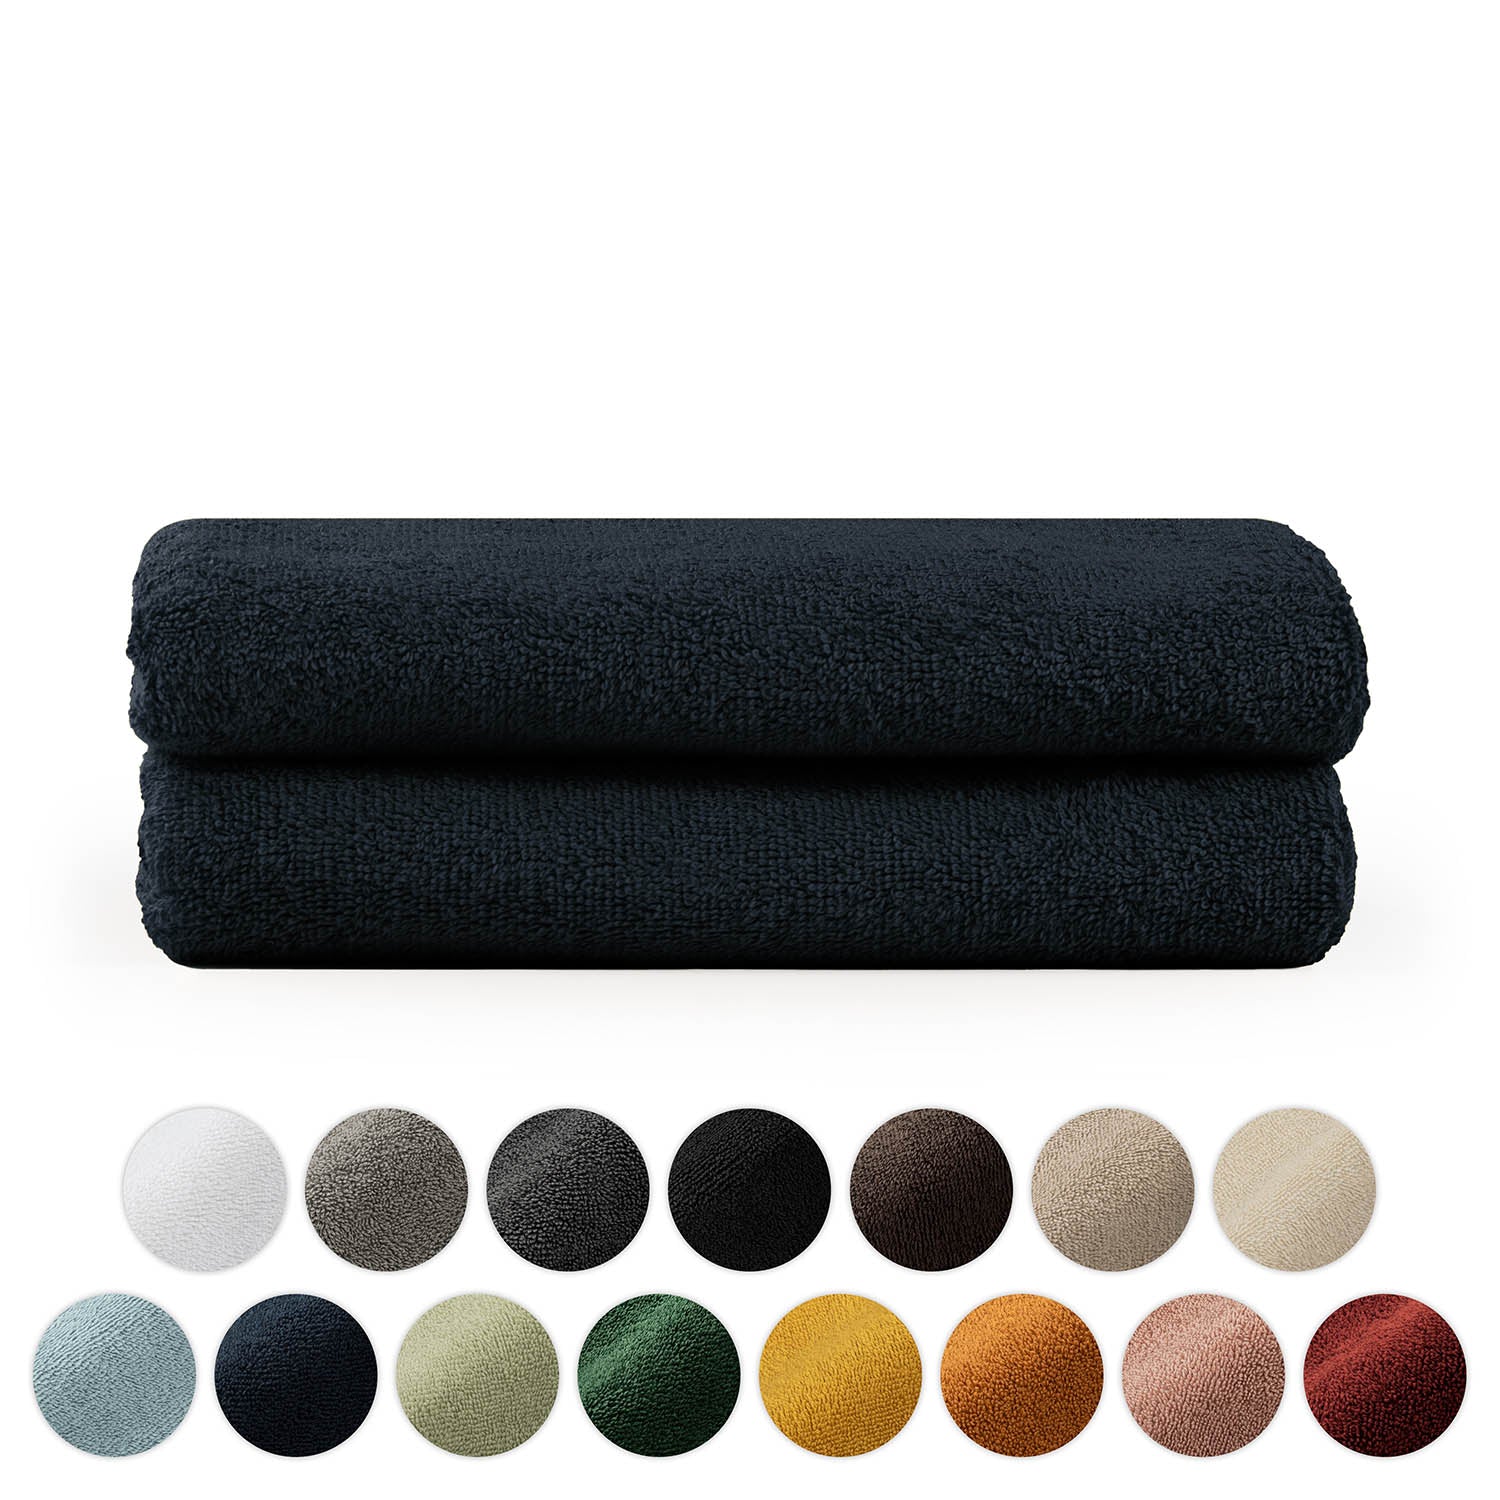 Stapel von zwei gefalteten Handtüchern mit einer Palette verschiedener Farbkreise darunter in Weiß Grau Schwarz Brauntönen Blau Grün Gelb und Rot